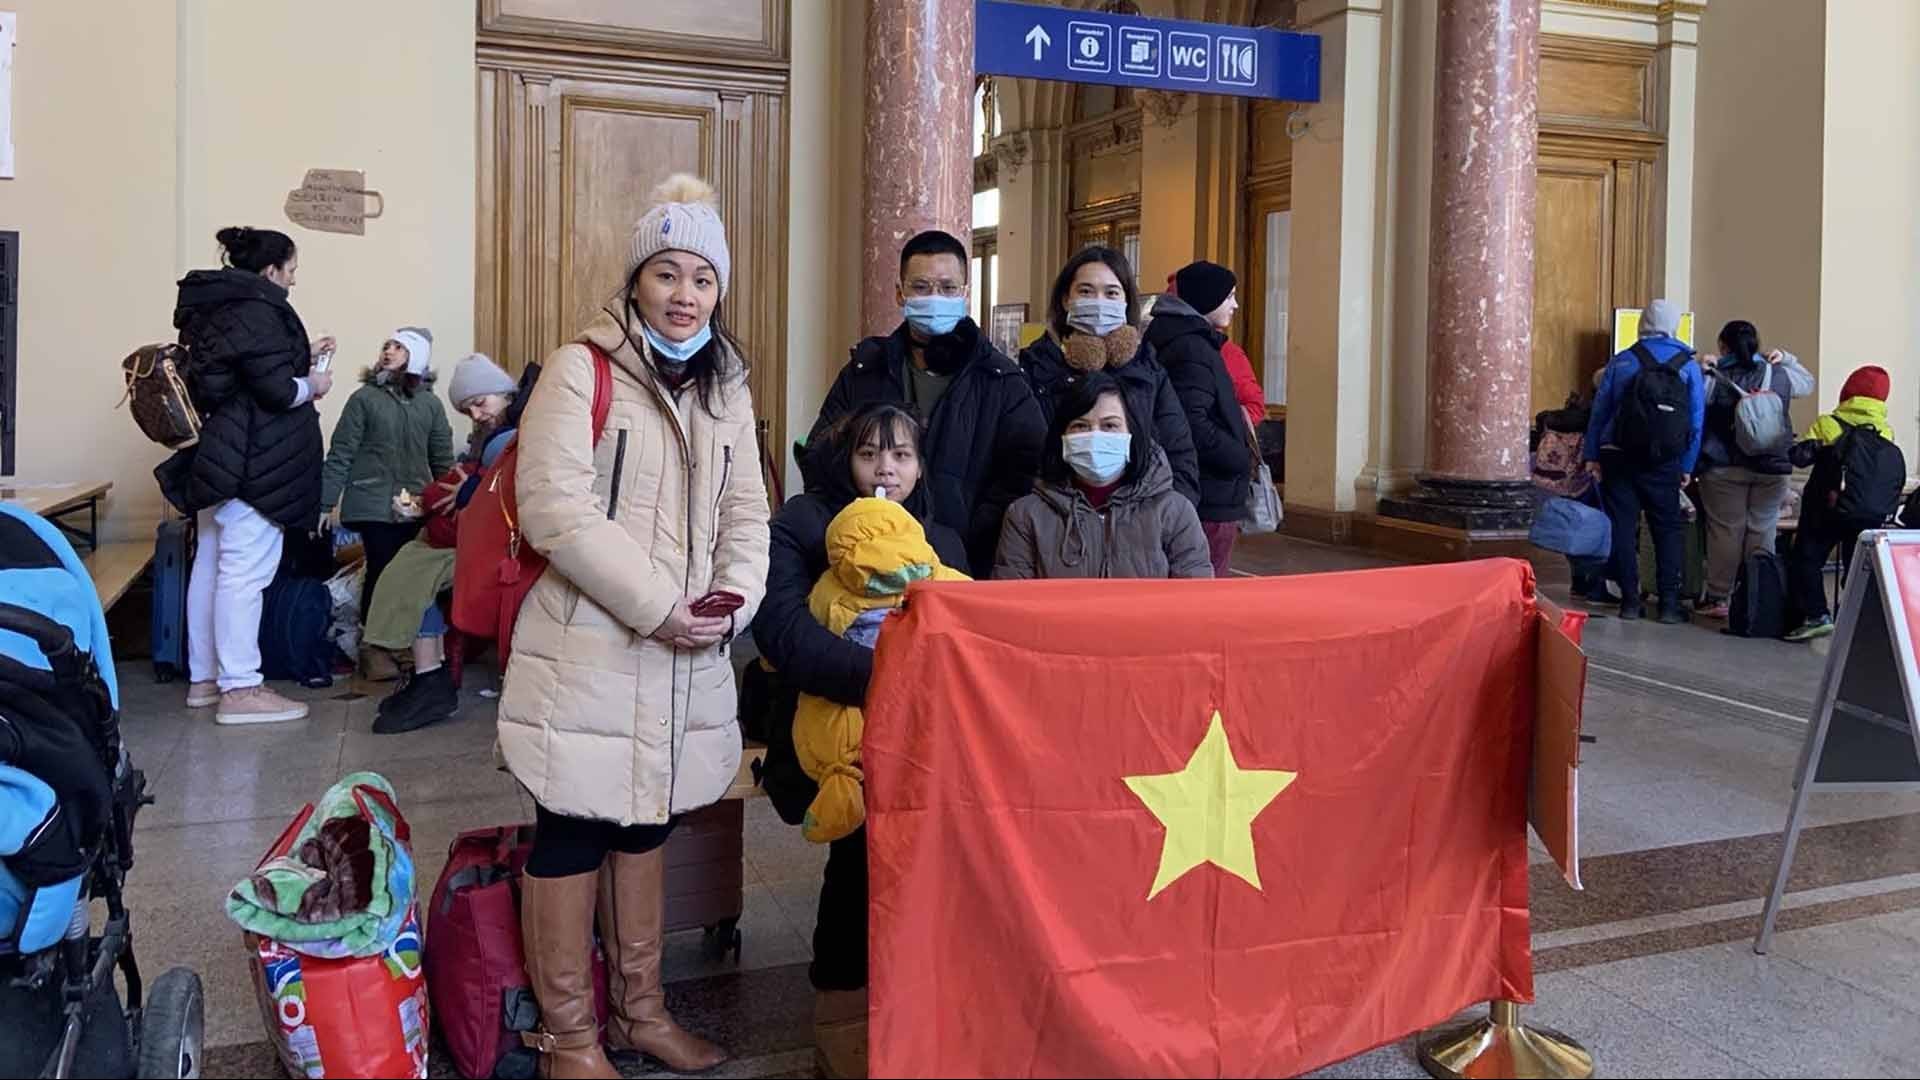 Những nghĩa cử cao đẹp của cộng đồng người Việt tại Hungary dành cho kiều bào sơ tán từ Ukraine